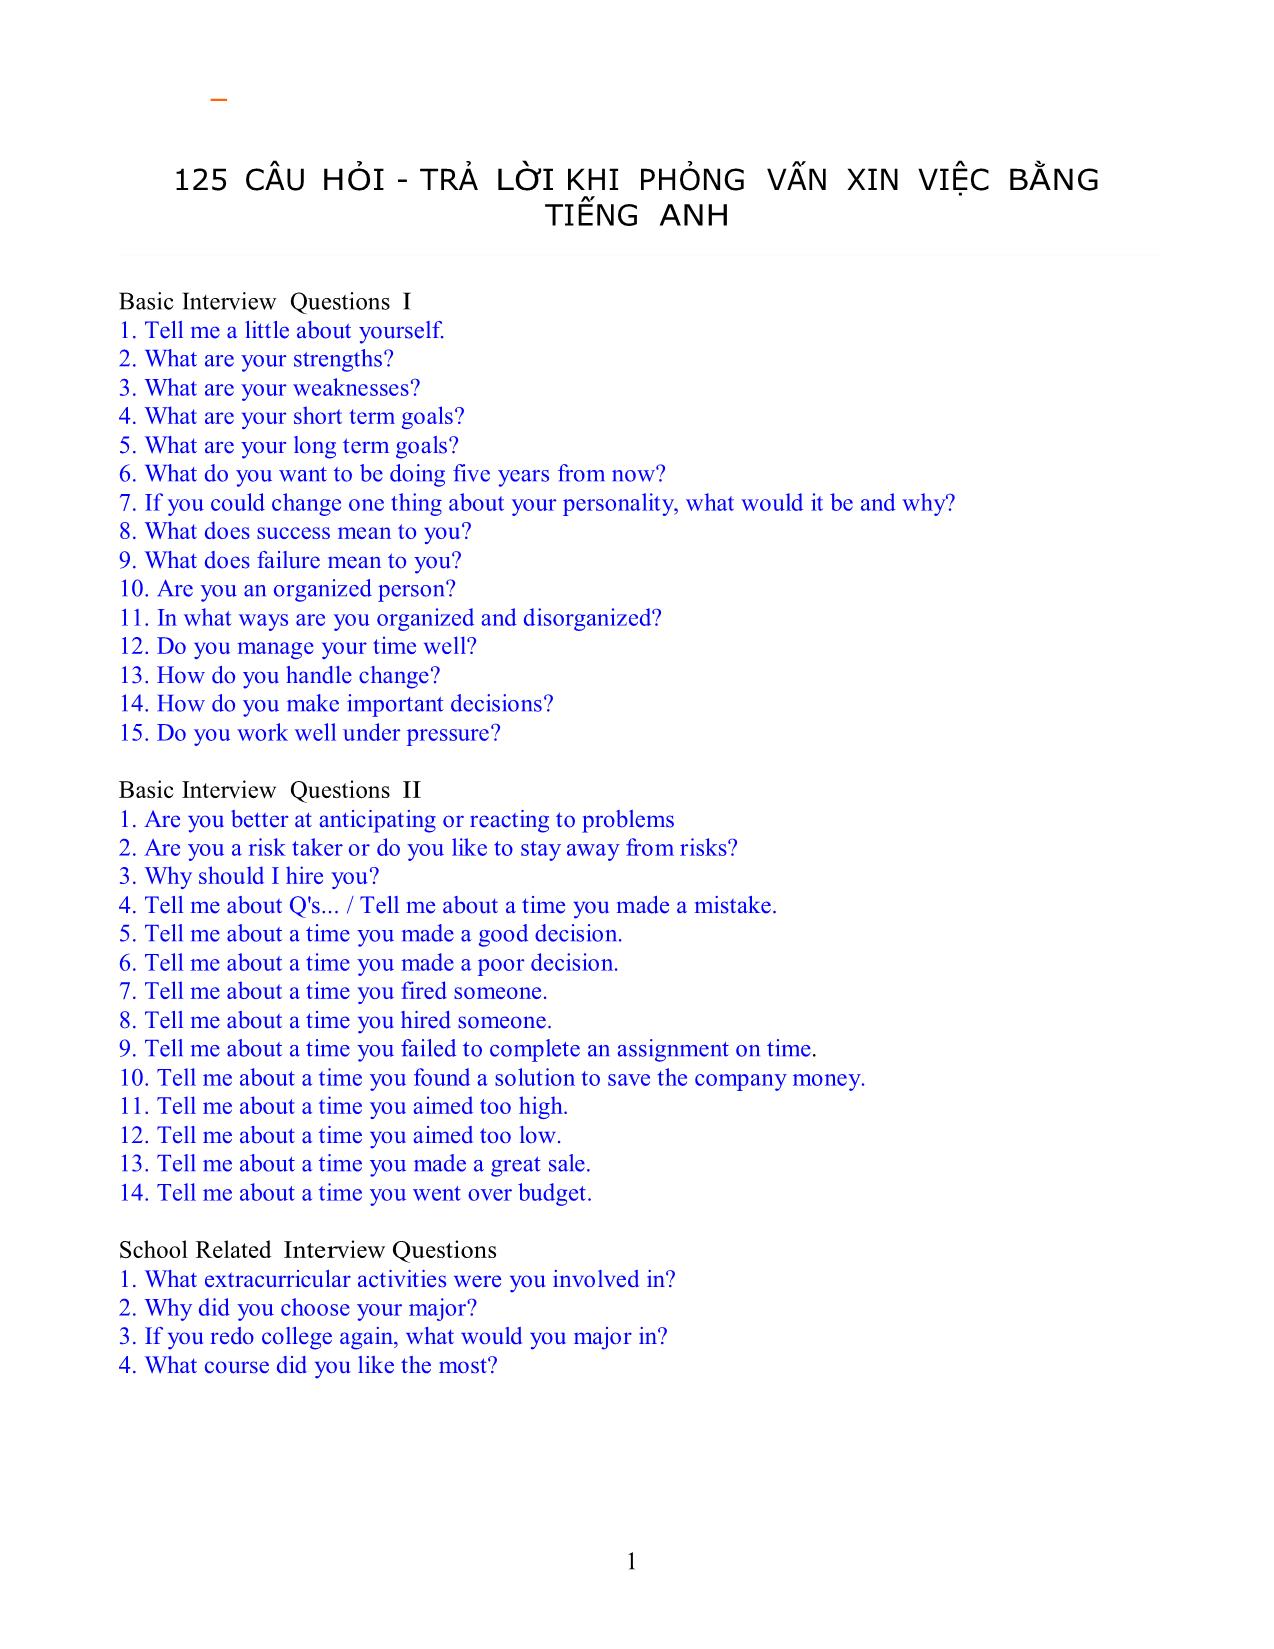 125 câu hỏi - Trả lời khi phỏng vấn xin việc bằng tiếng anh trang 1